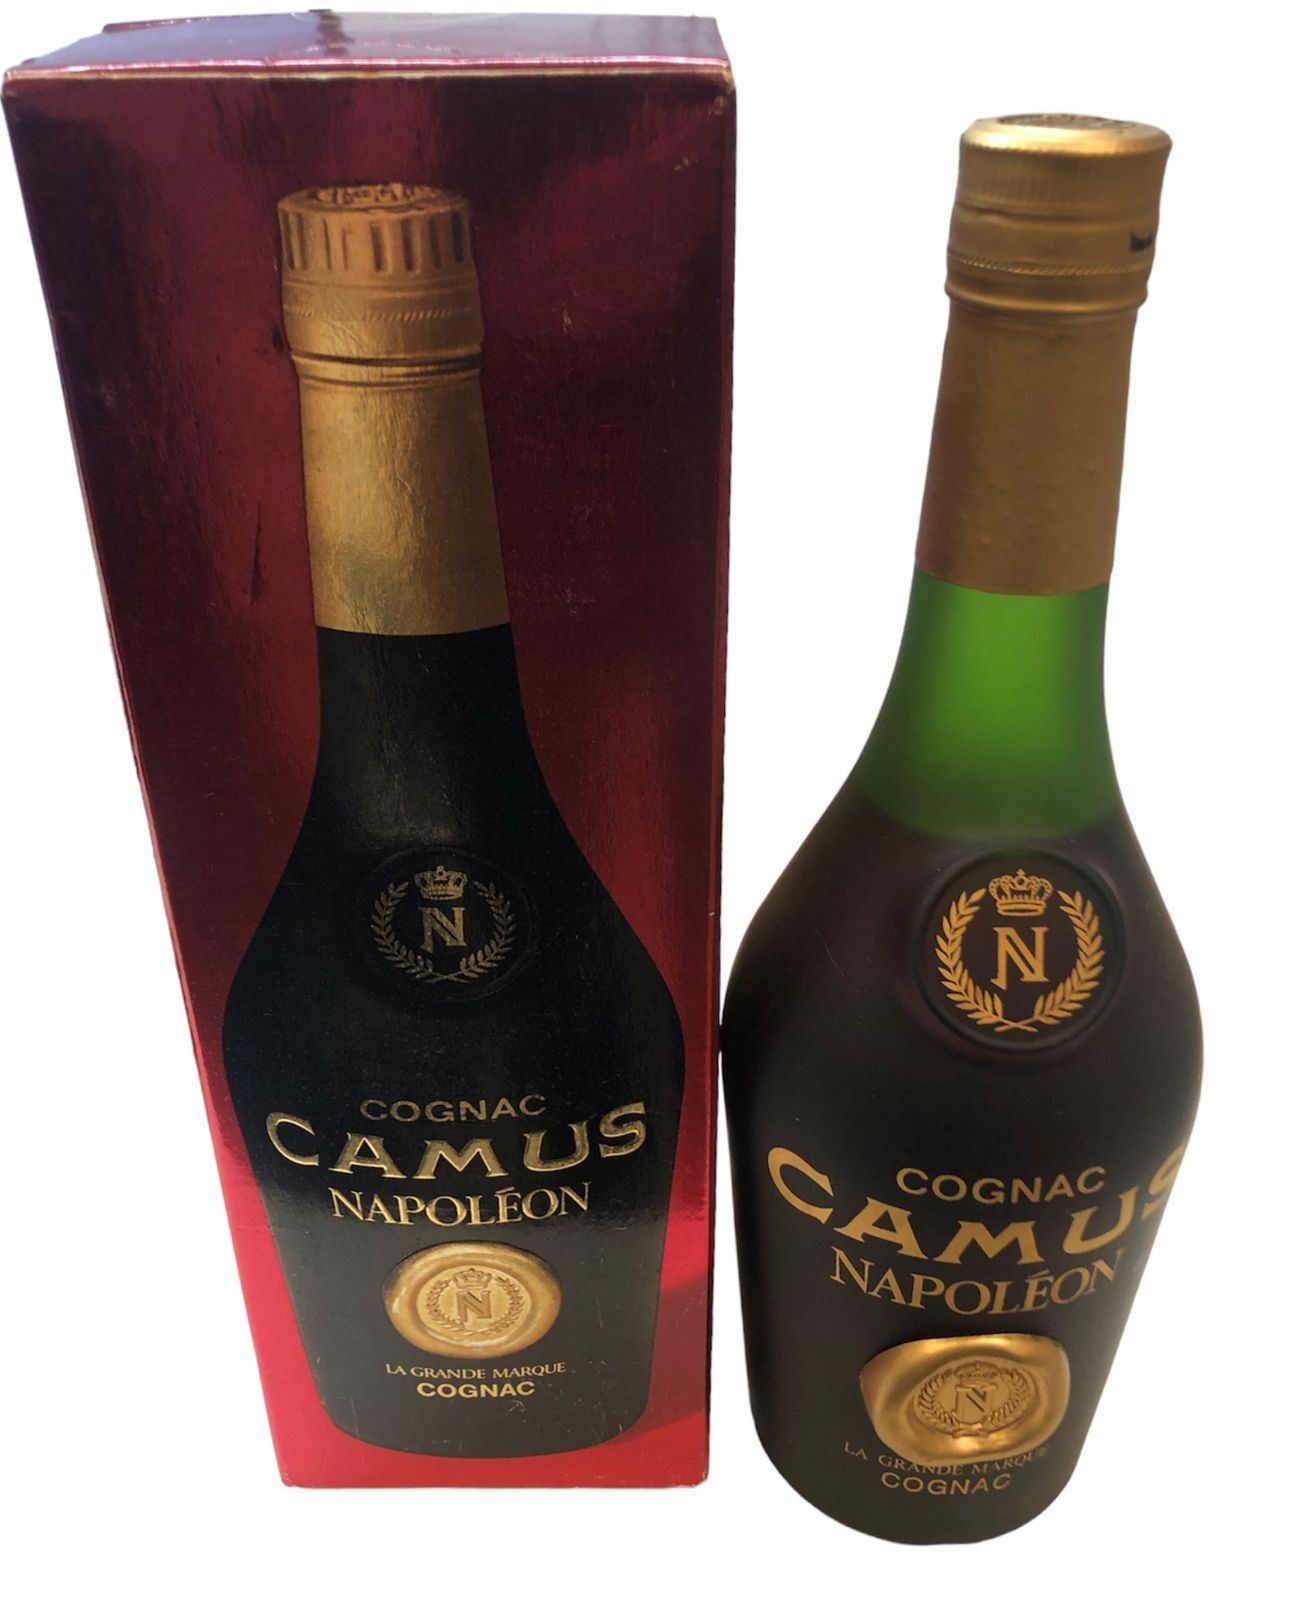 COGNAC CAMUS NAPOLEON 空き瓶 - ブランデー